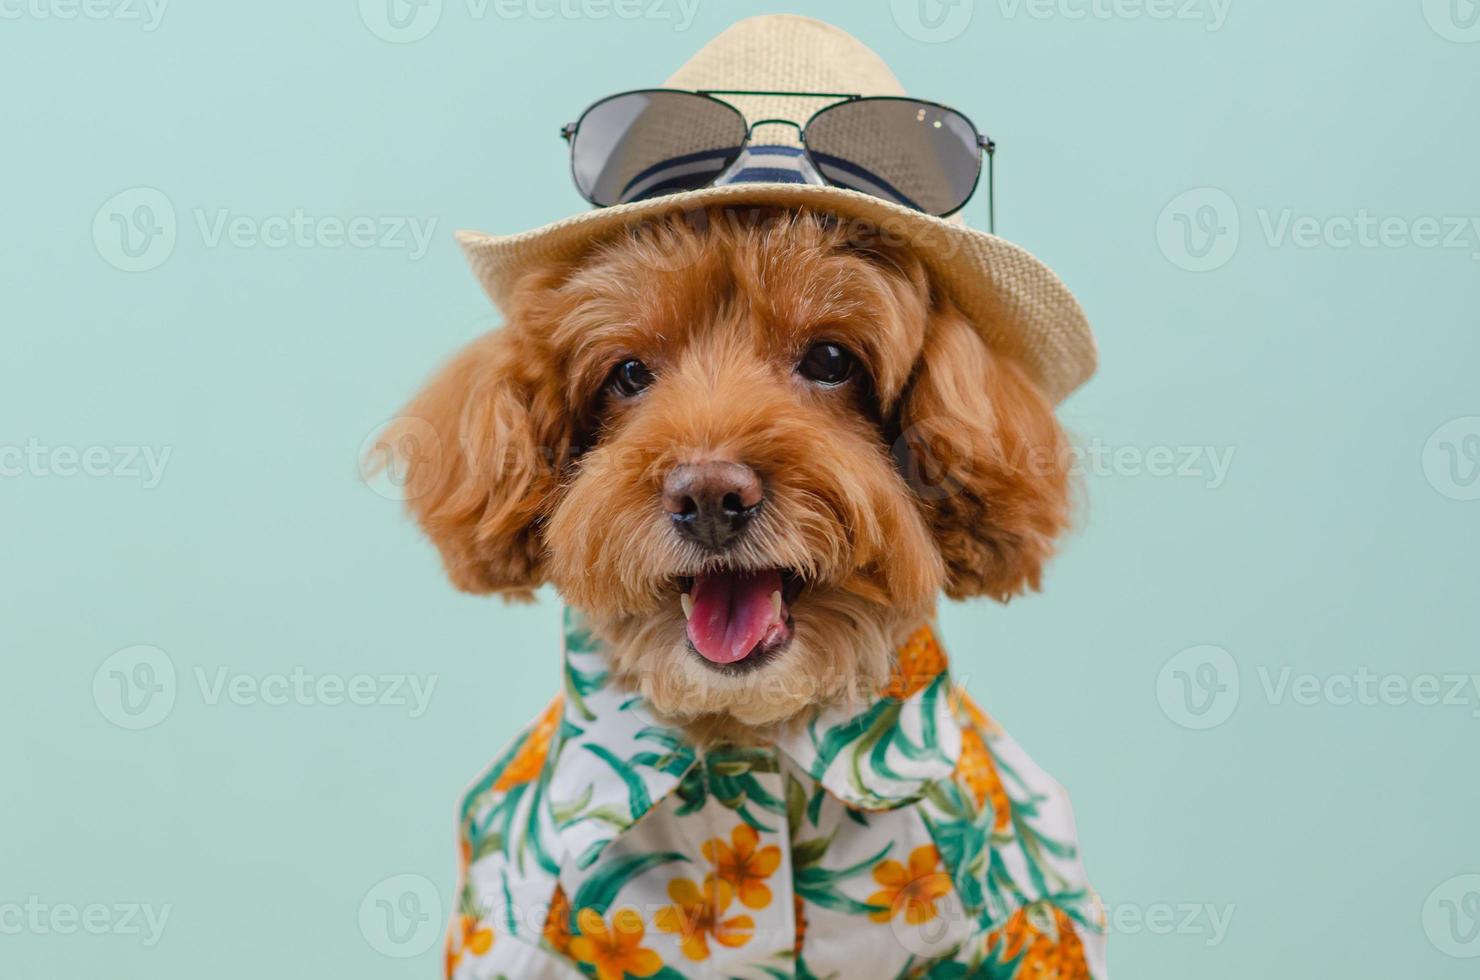 sorridente cane barboncino giocattolo marrone indossa un cappello con occhiali da sole sulla parte superiore e vestito hawaii foto